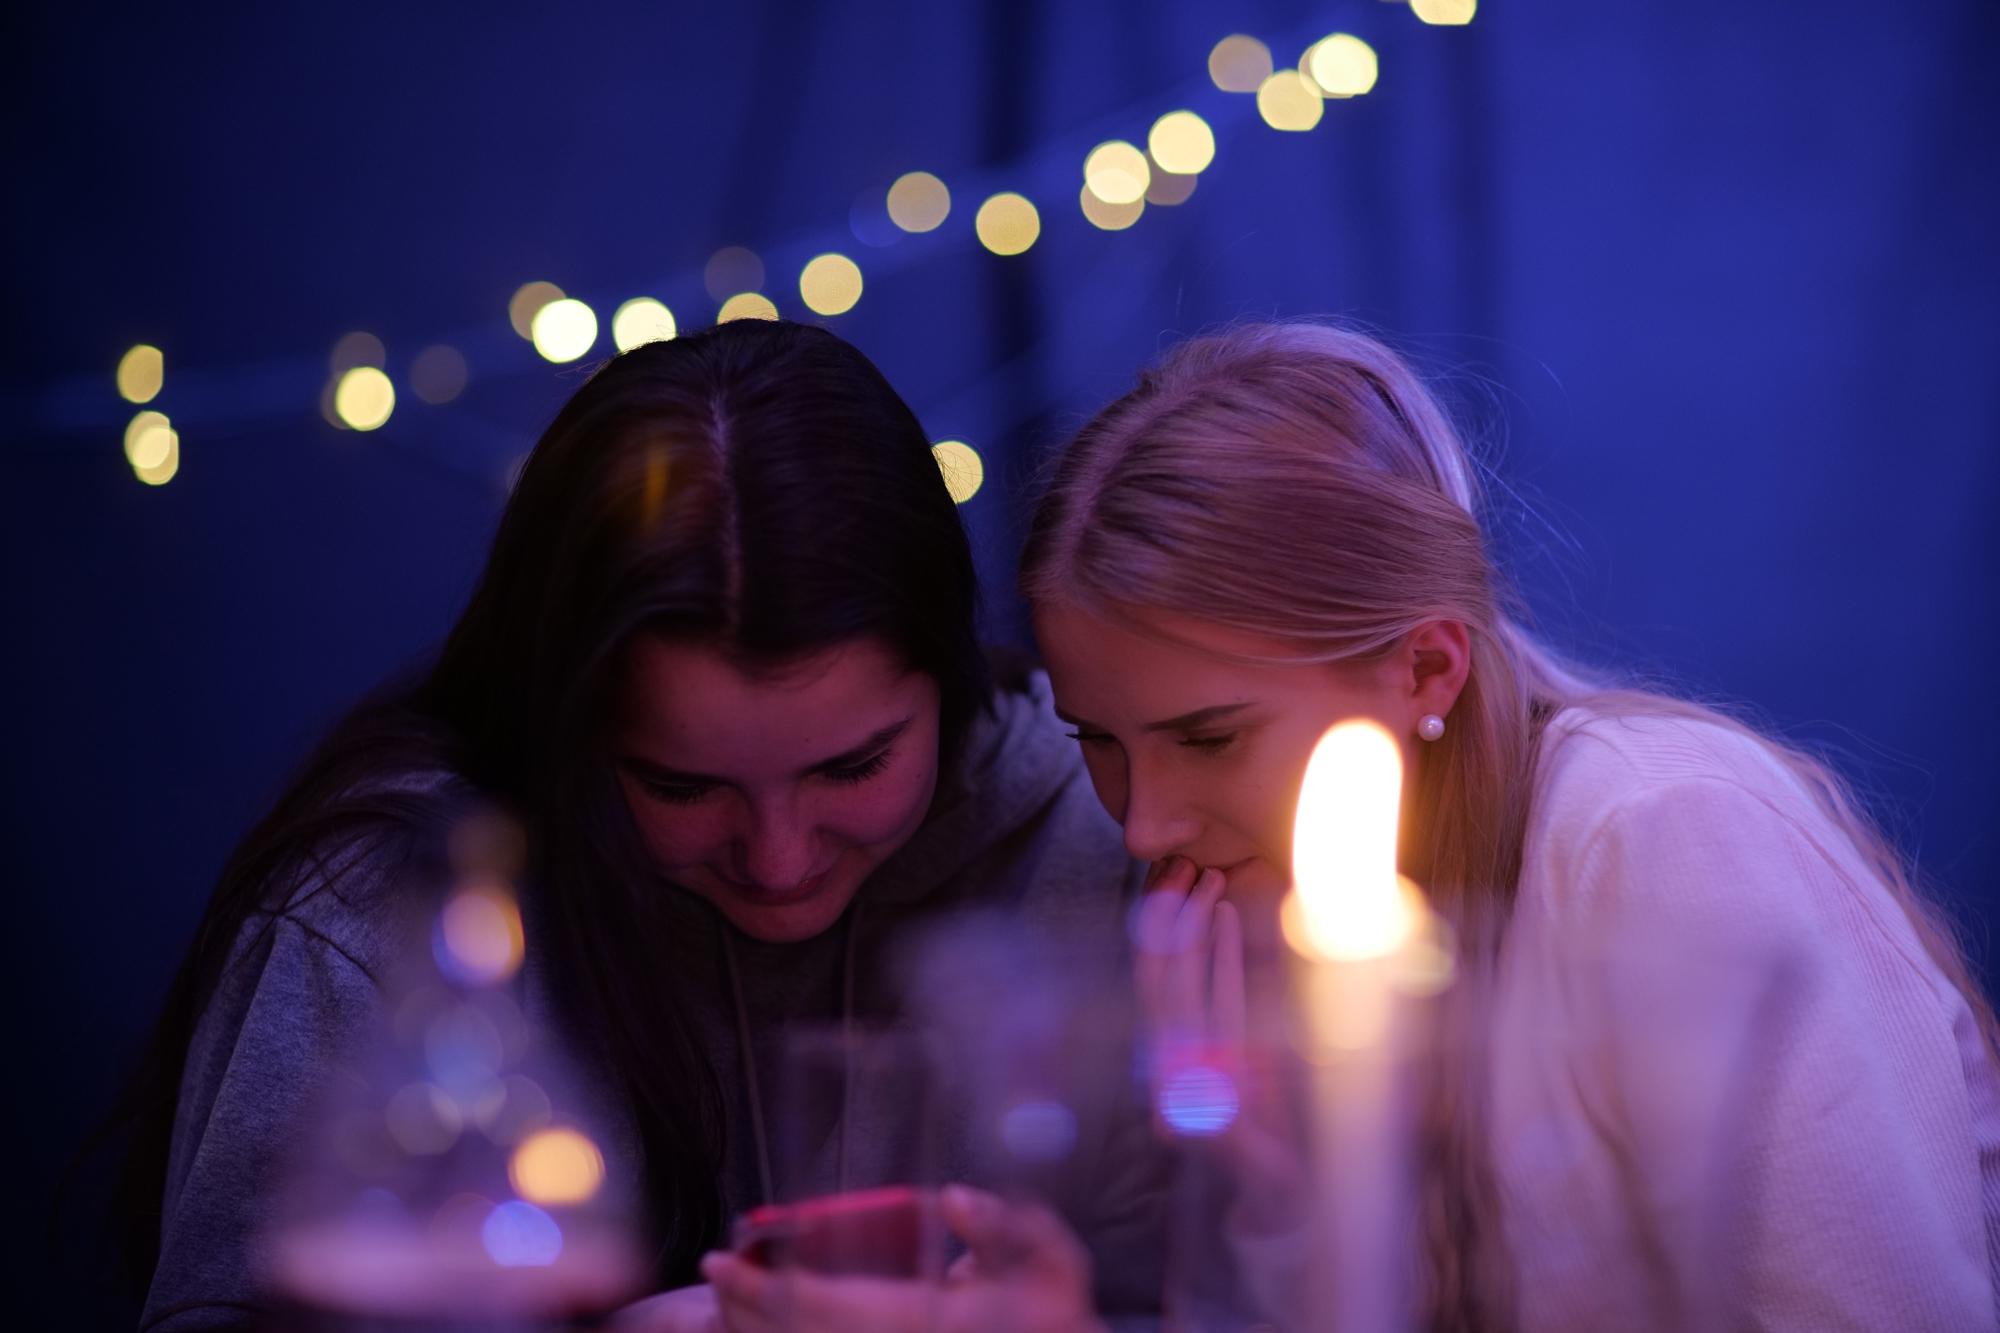 Två unga kvinnor som sitter och kollar på en mobiltelefon. På bordet framför dem står det ett tänt ljus.